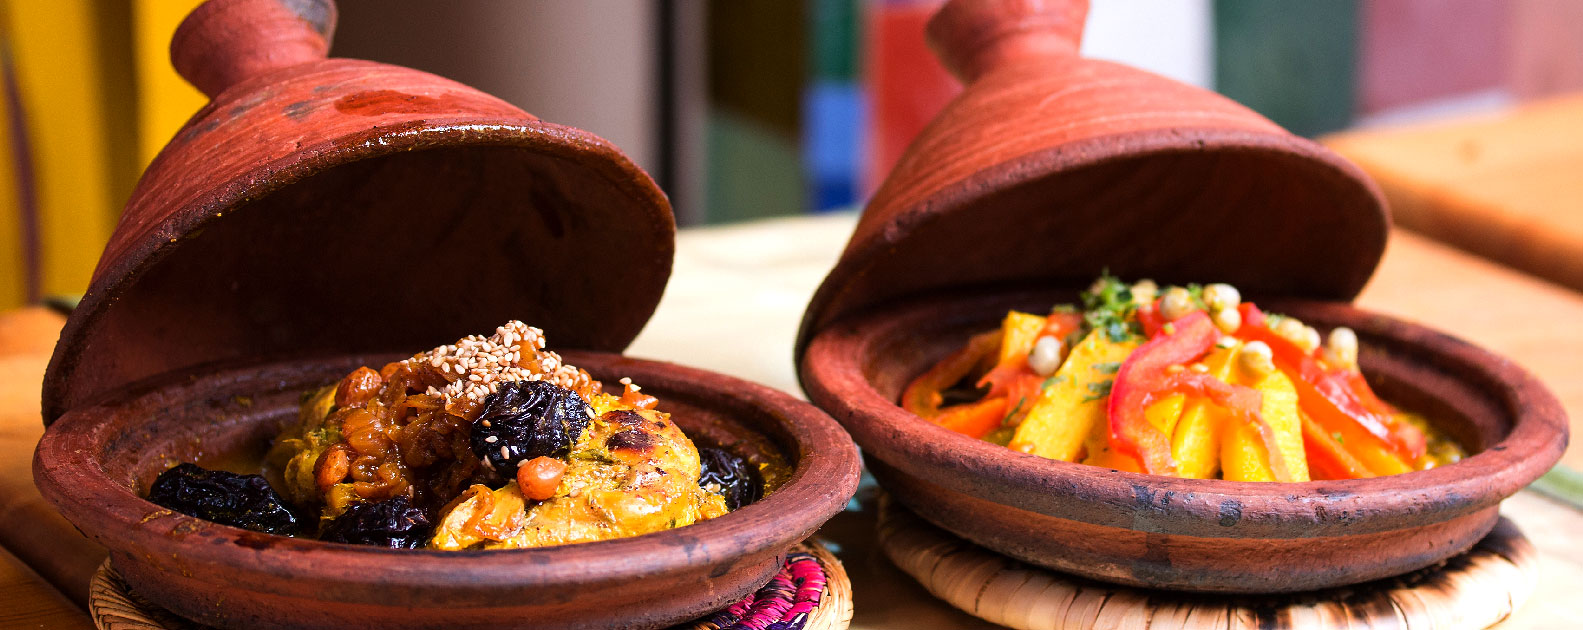 Les délices de la gastronomie marocaine